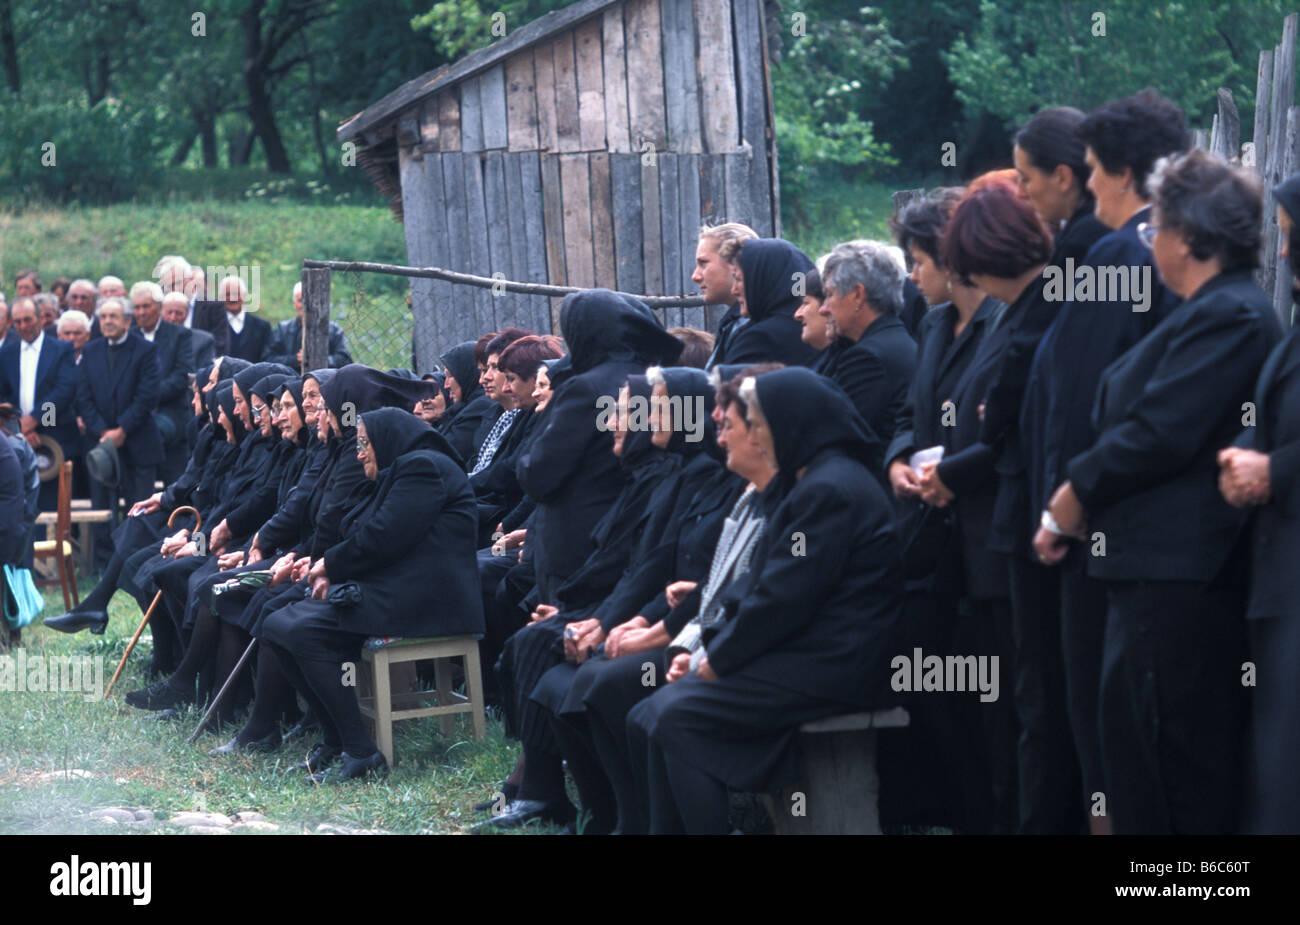 Der Beerdigung Gizella Kocisis im Alter von 89 im Garten ihres Hauses in Szekelyderz oder Dariju Dorf Siebenbürgen Rumänien Stockfoto